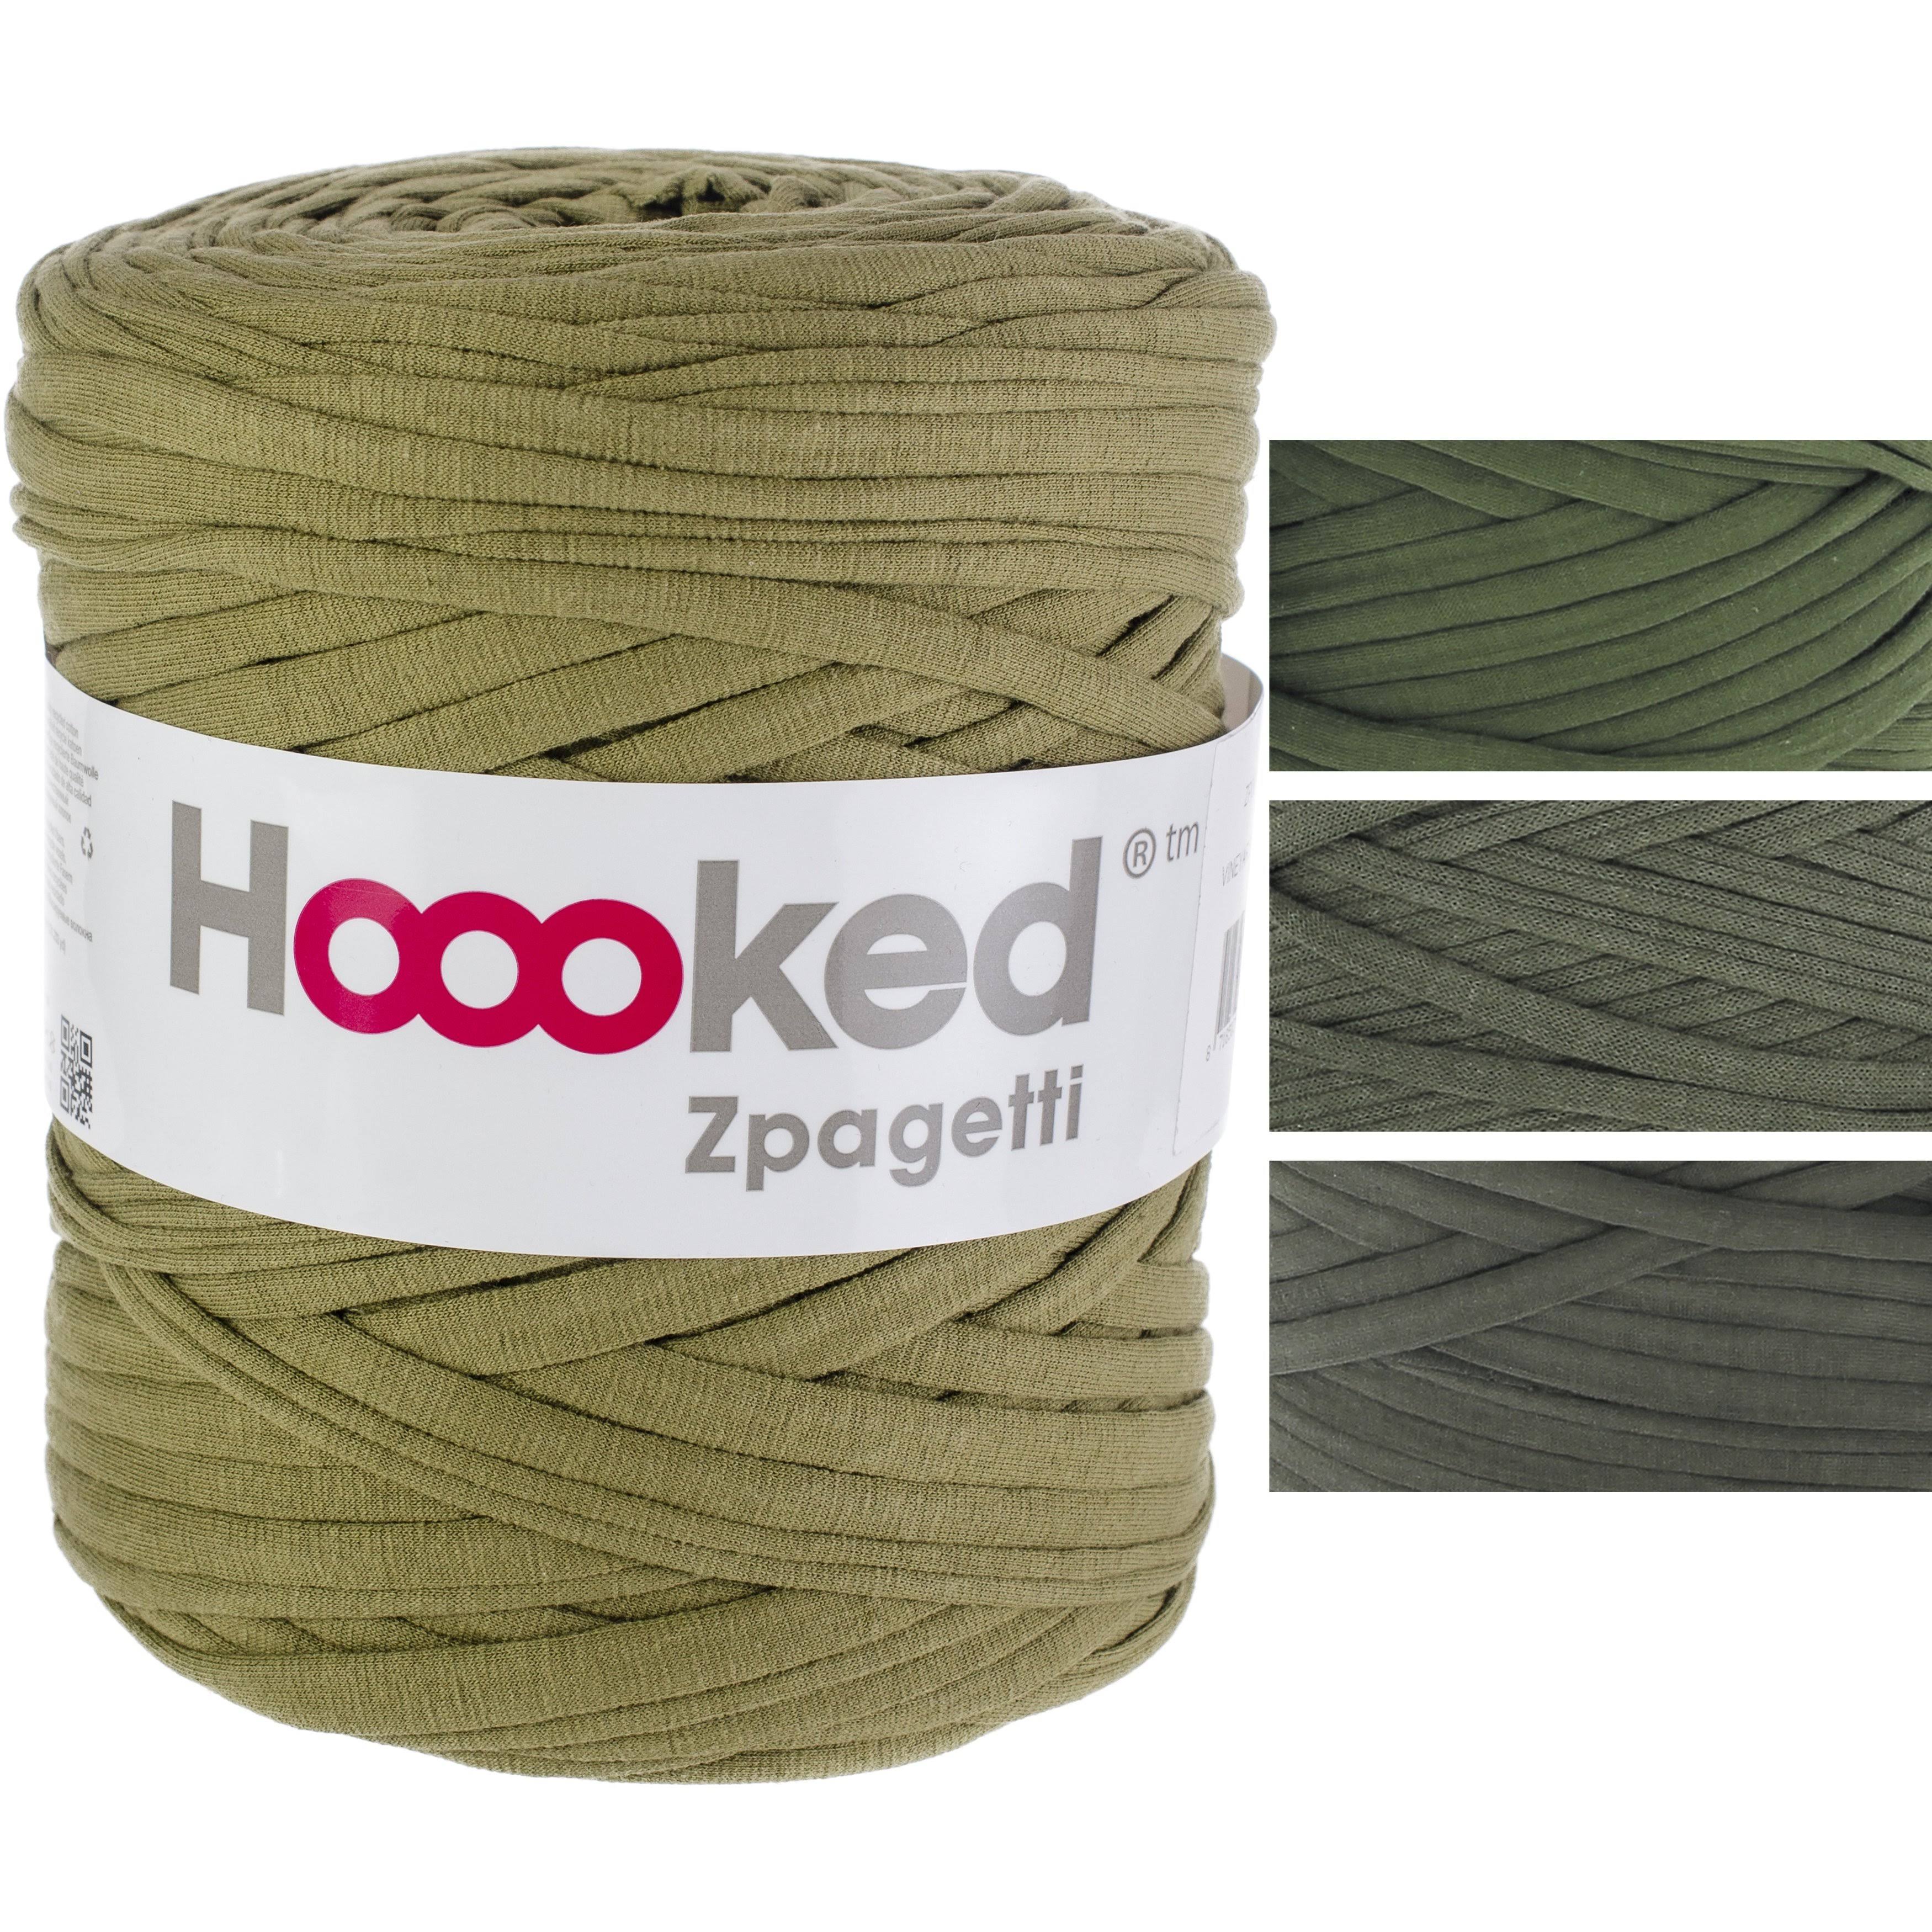 Hoooked Zpagetti Yarn Vineyard Green ZP00 1 50